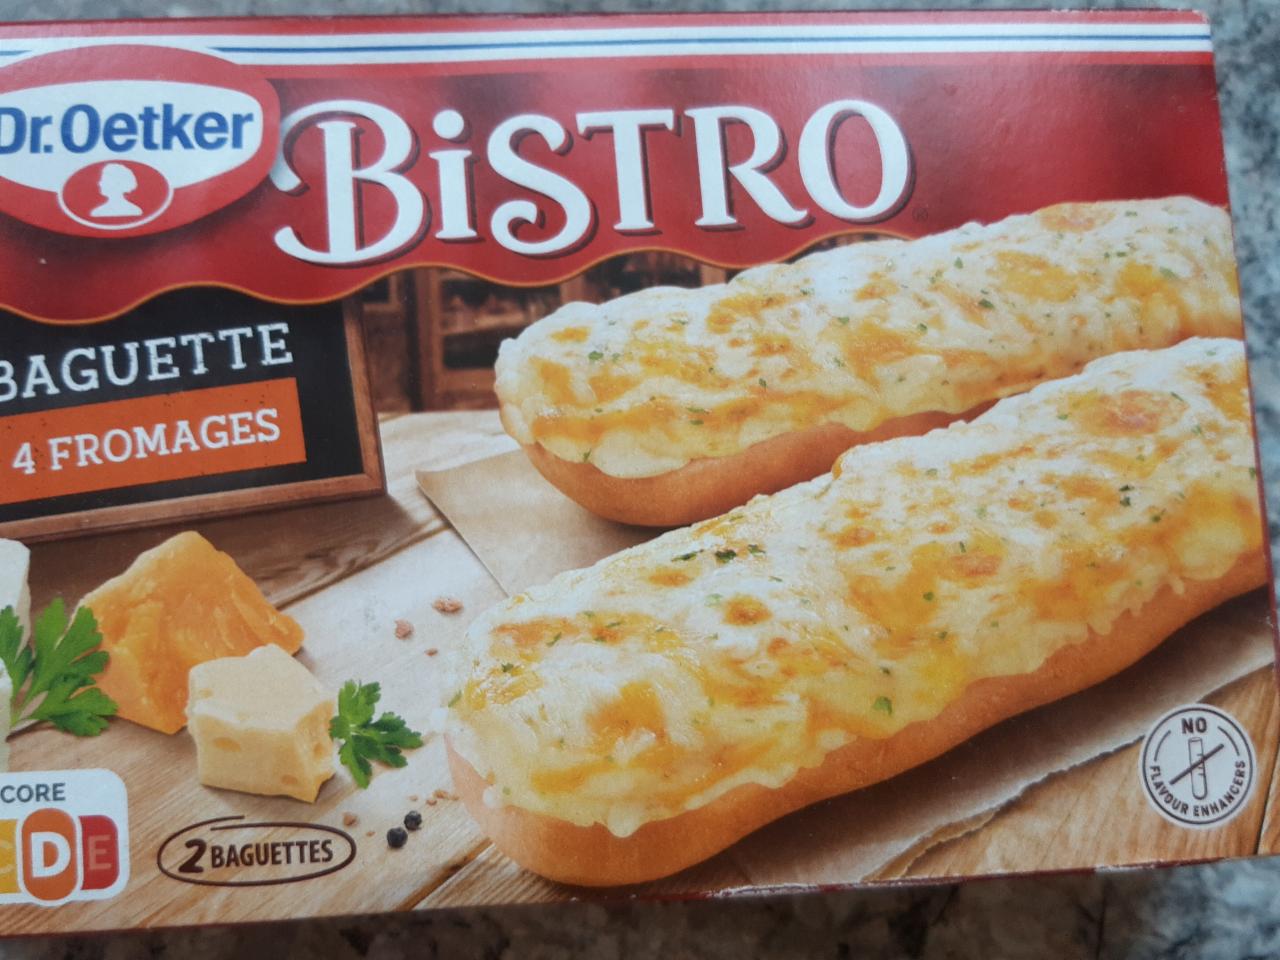 Bistro Baguette fromages hodnoty - kalorie, Dr.Oetker nutriční kJ a 4